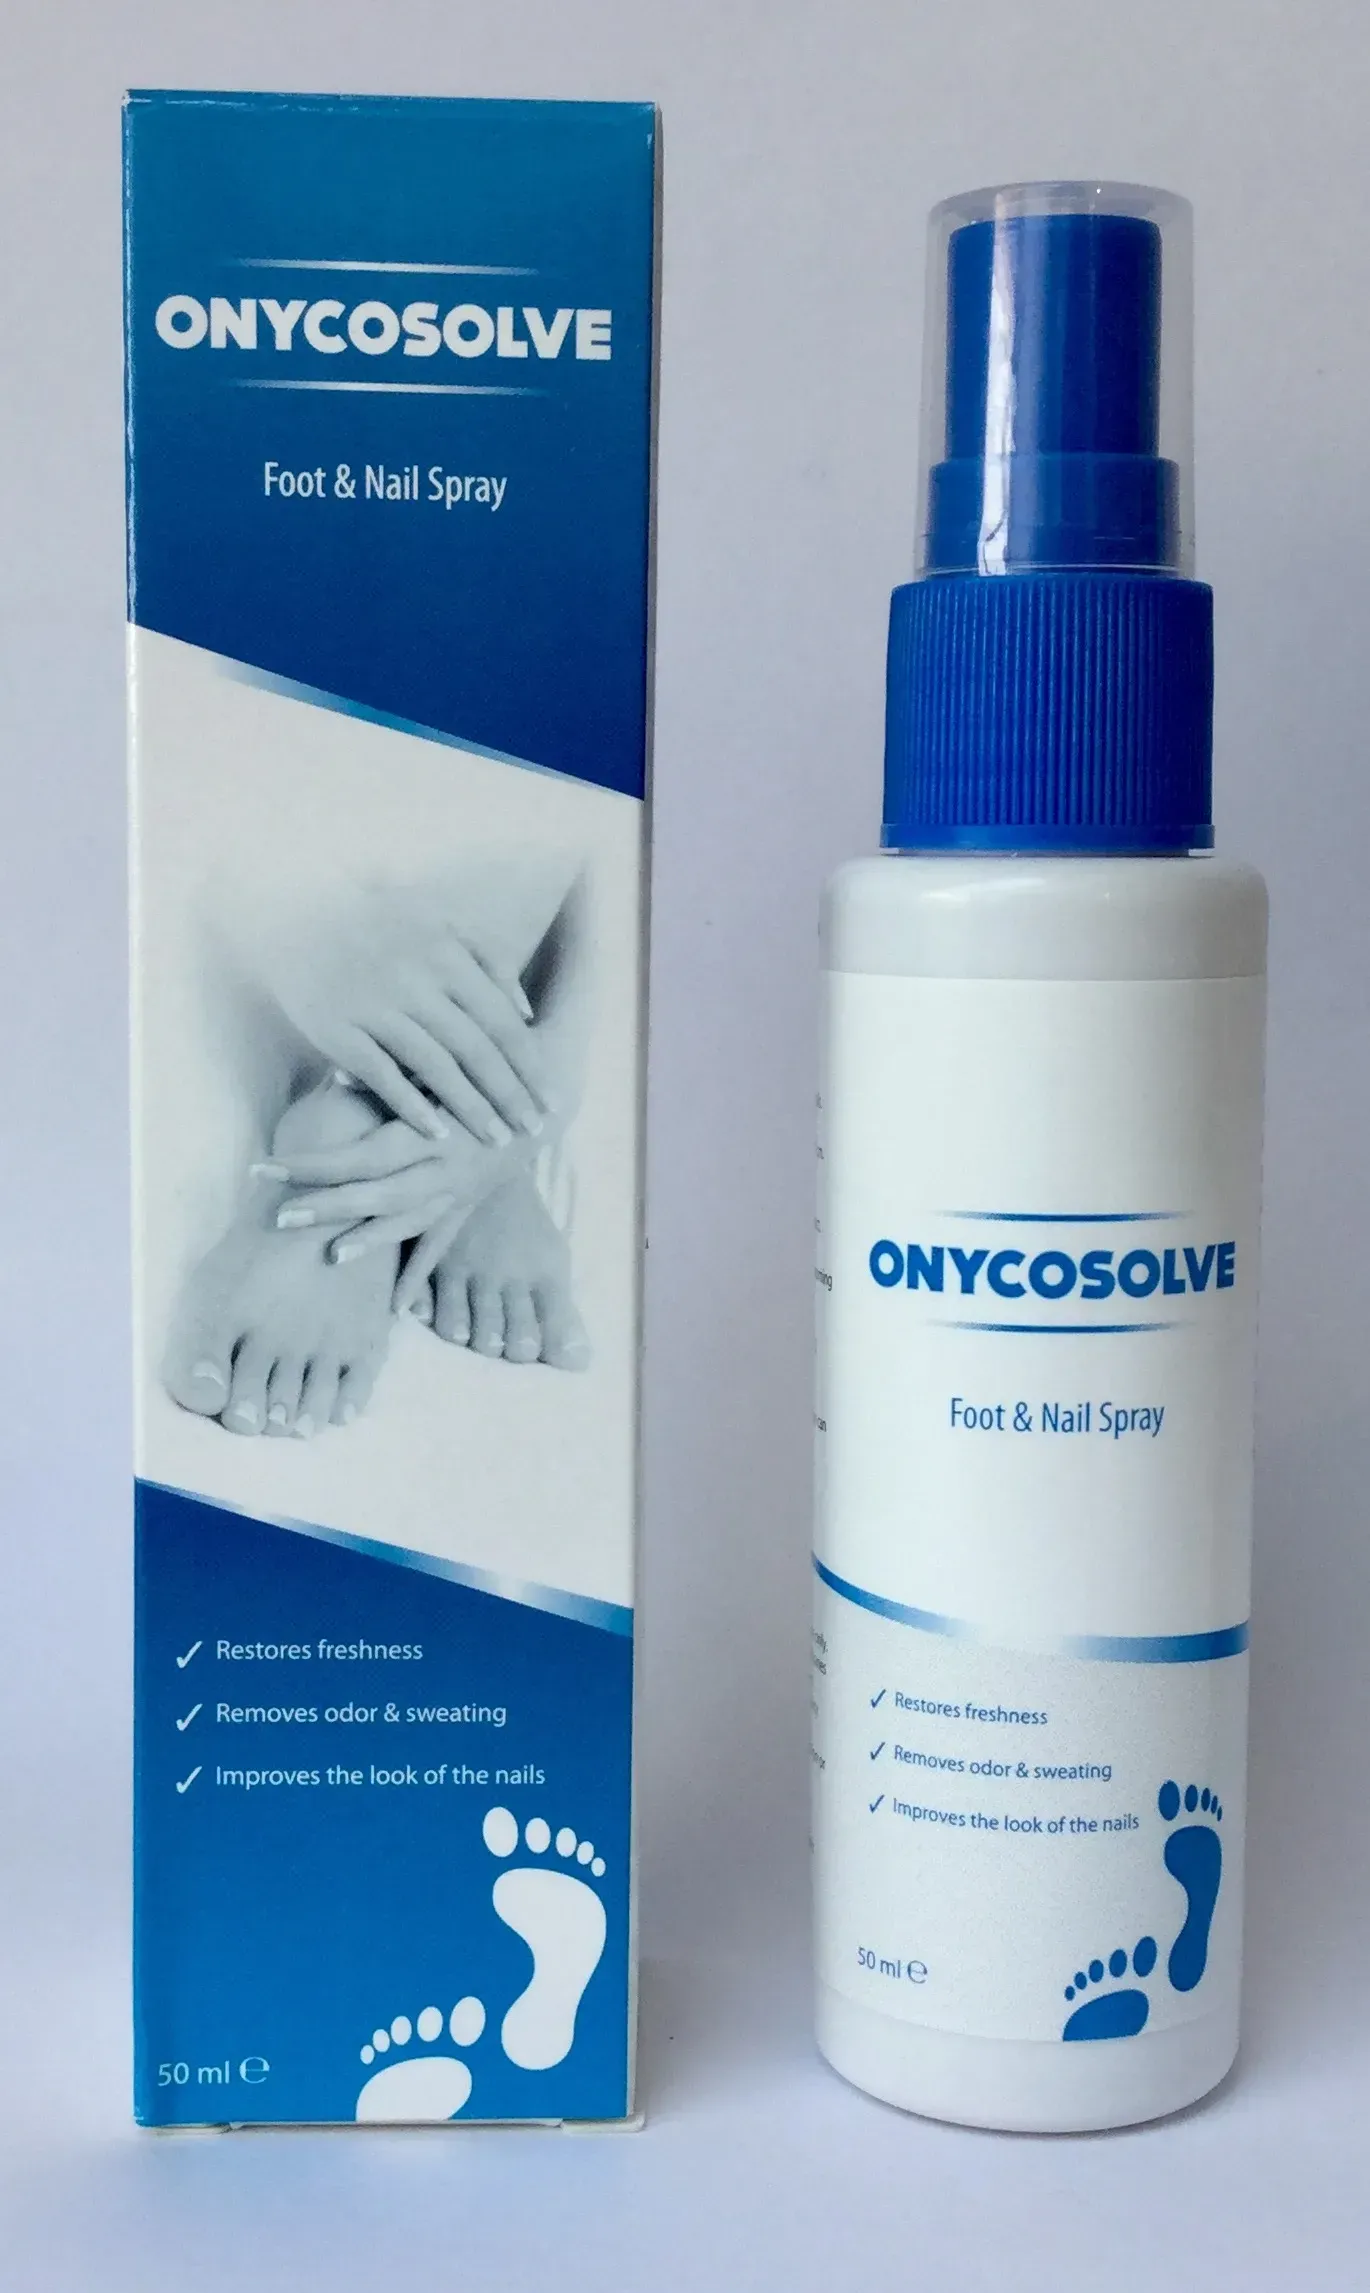 Onixan spray diskuze - lékárna - cena - kde koupit levné - co to je - kde objednat - Česko - recenze - zkušenosti.